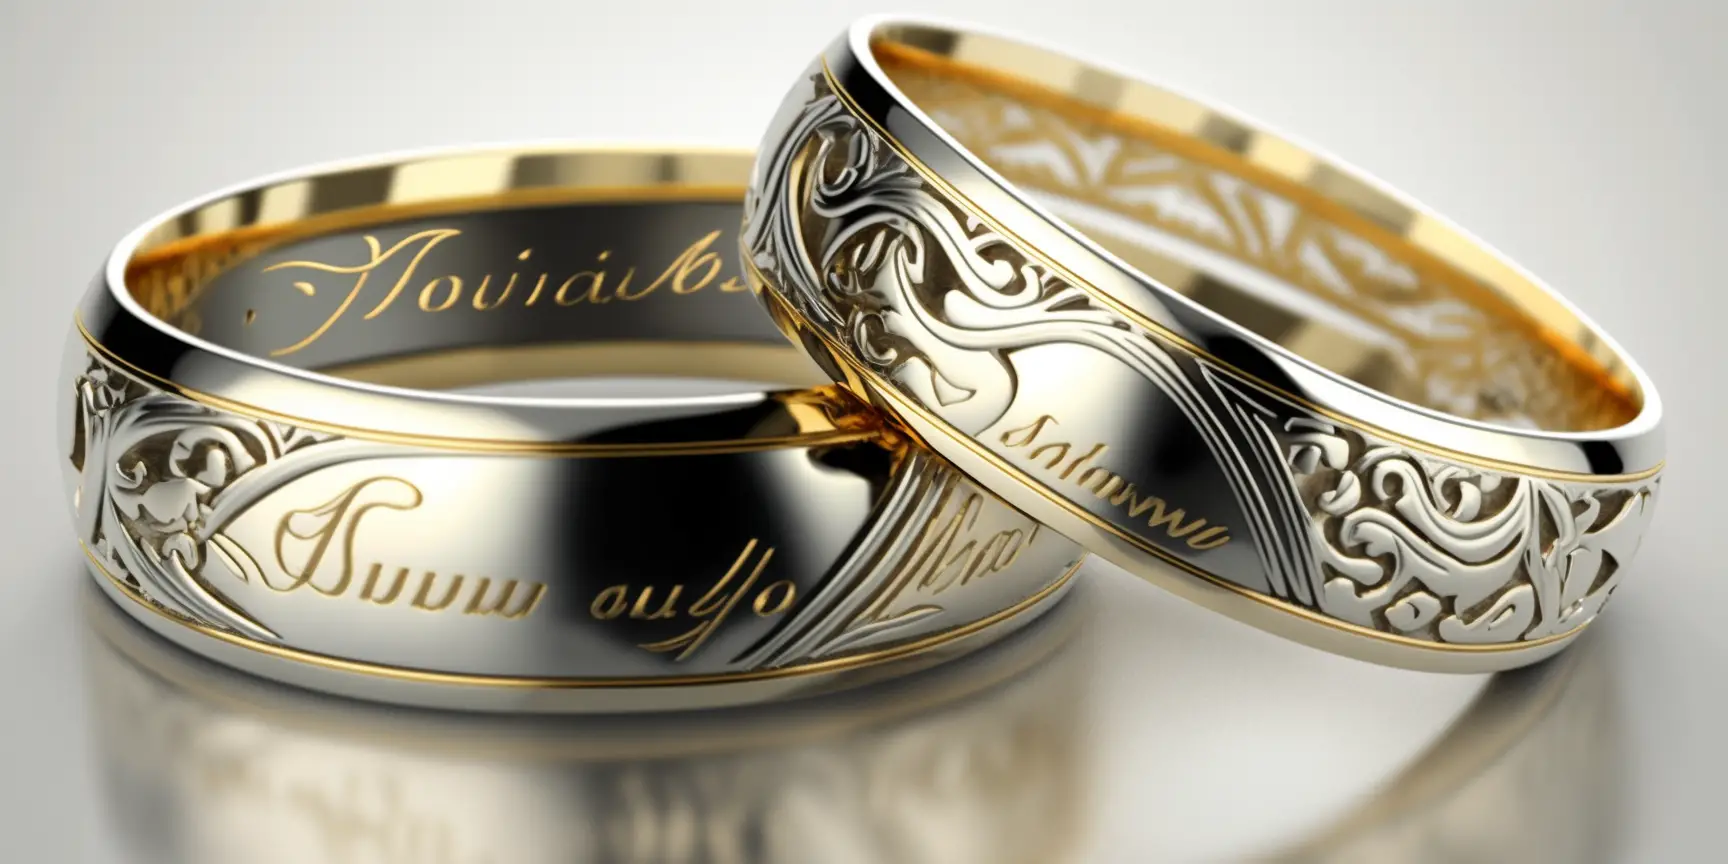 900, 900PT, PT900, 950, 950PT, PT950 (Platinum) - gold ring markings and letters